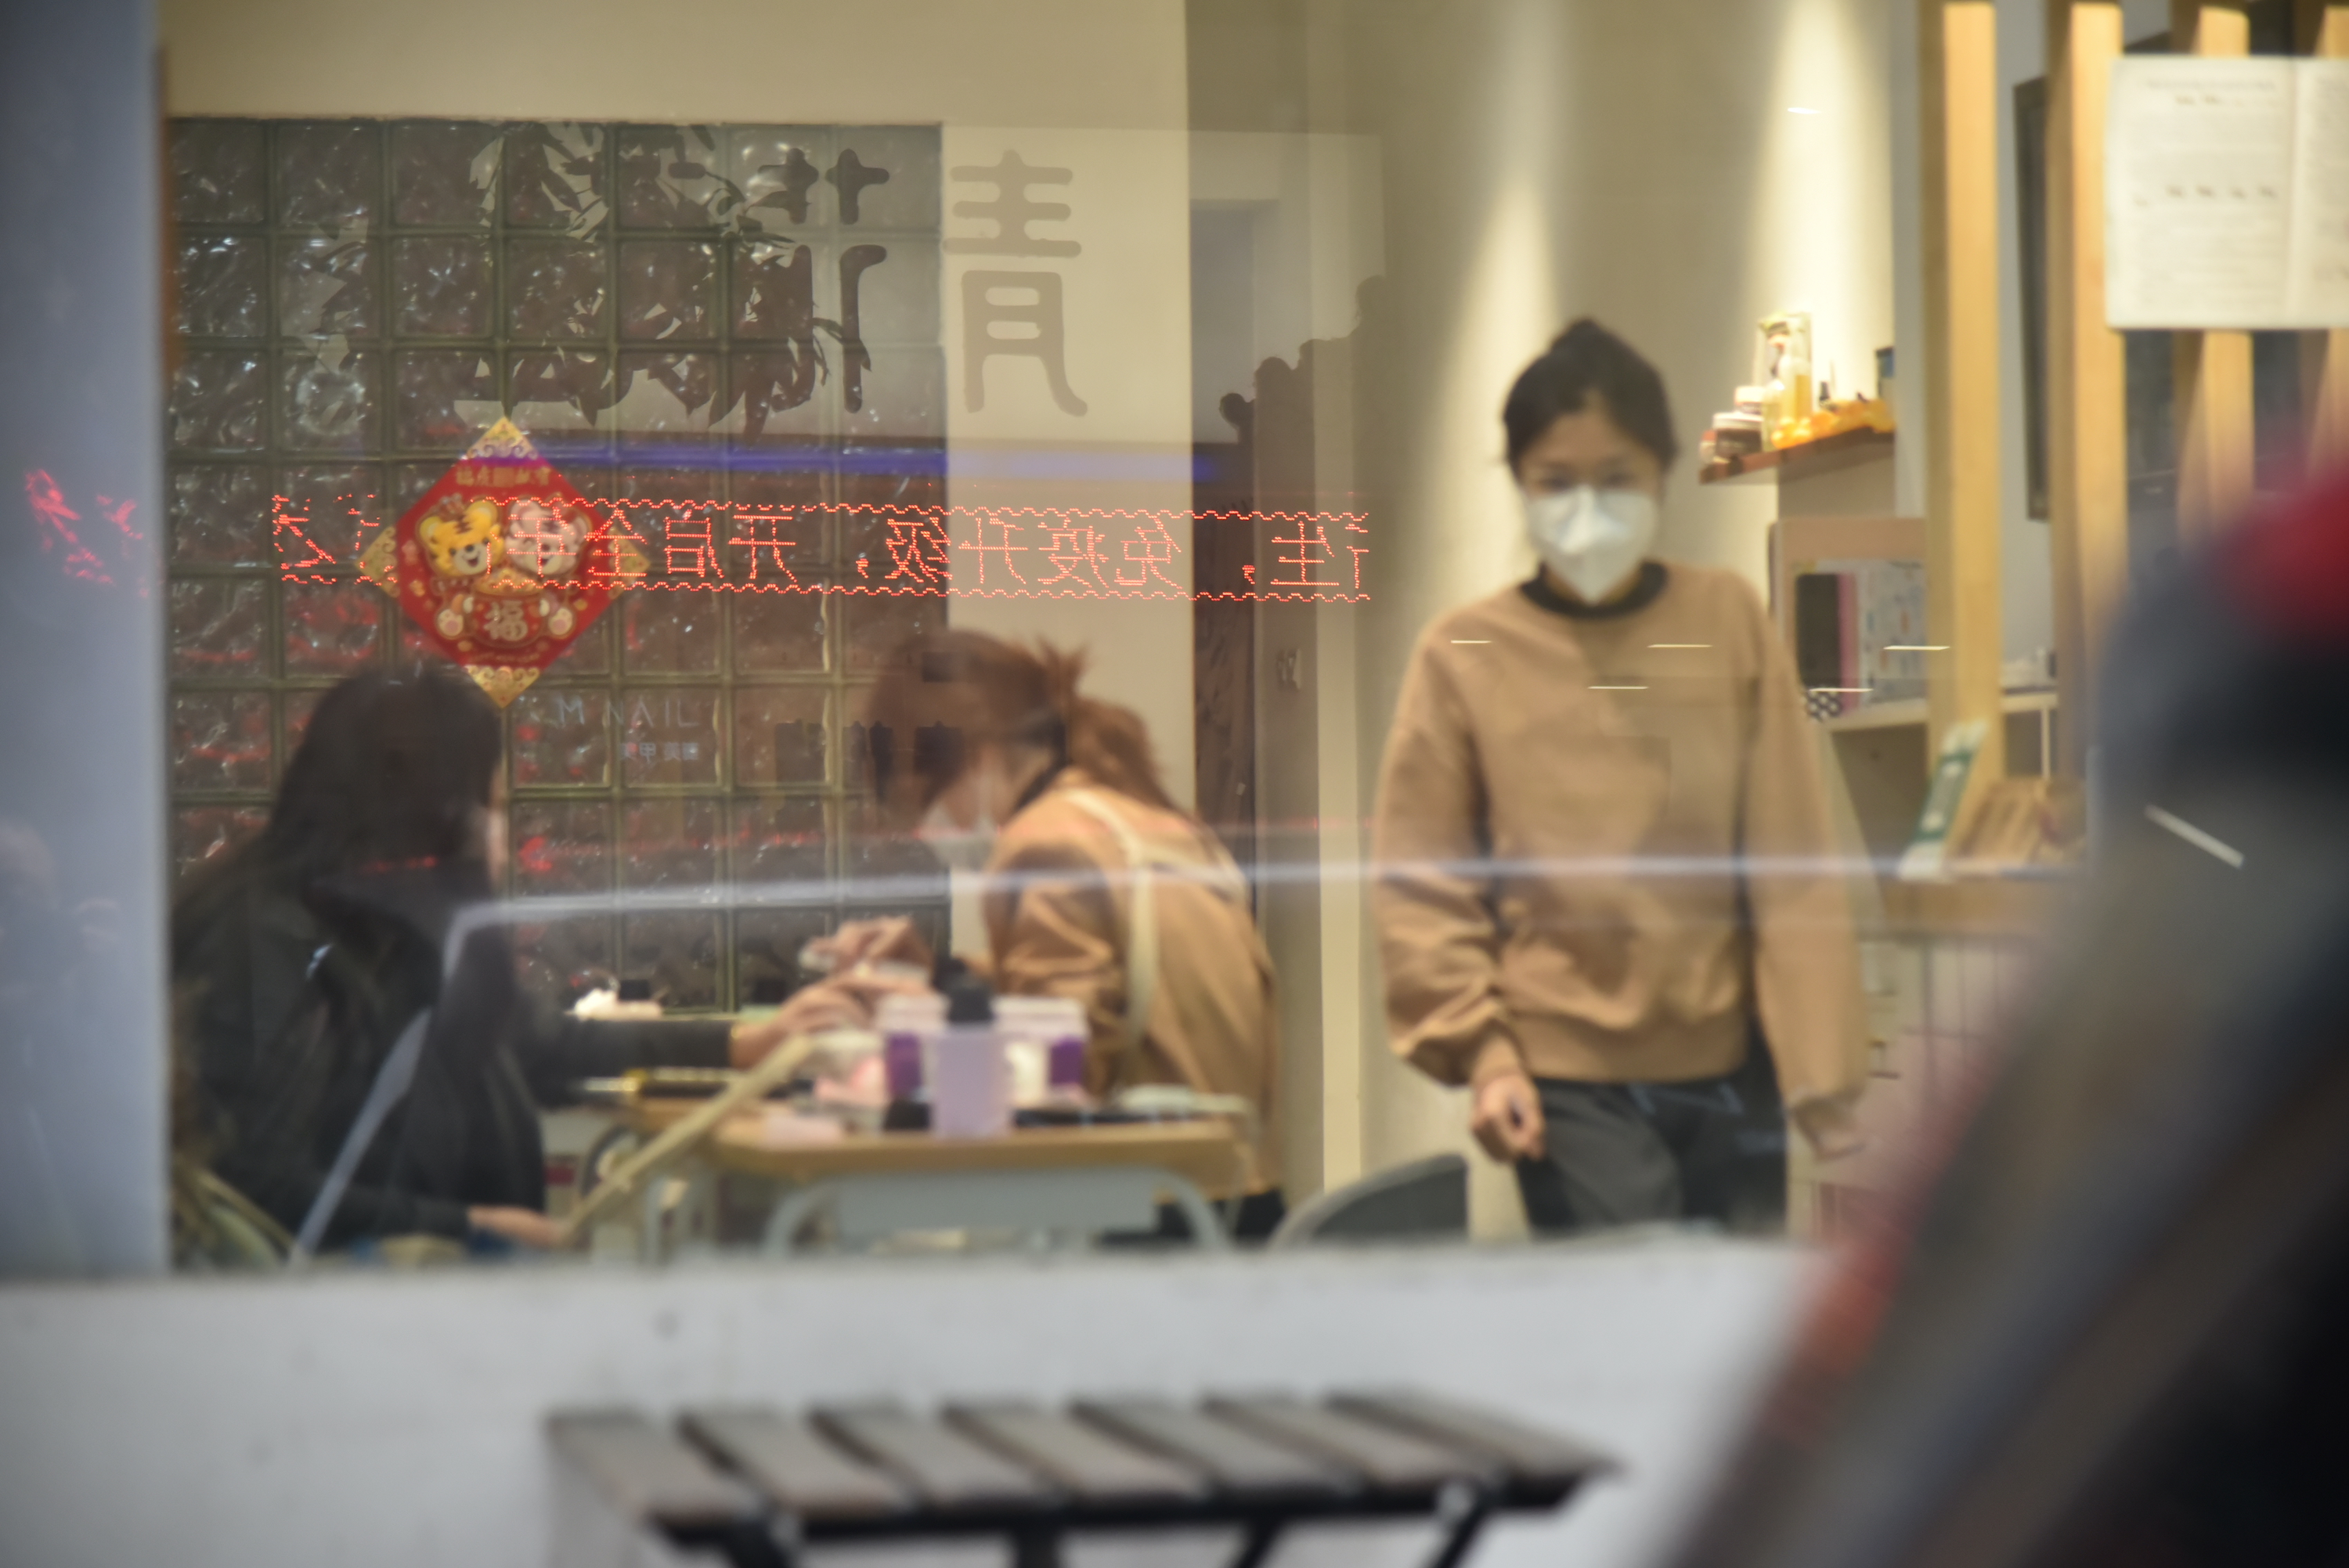 广州多区解除管控 烧腊档、理发店回归市民生活